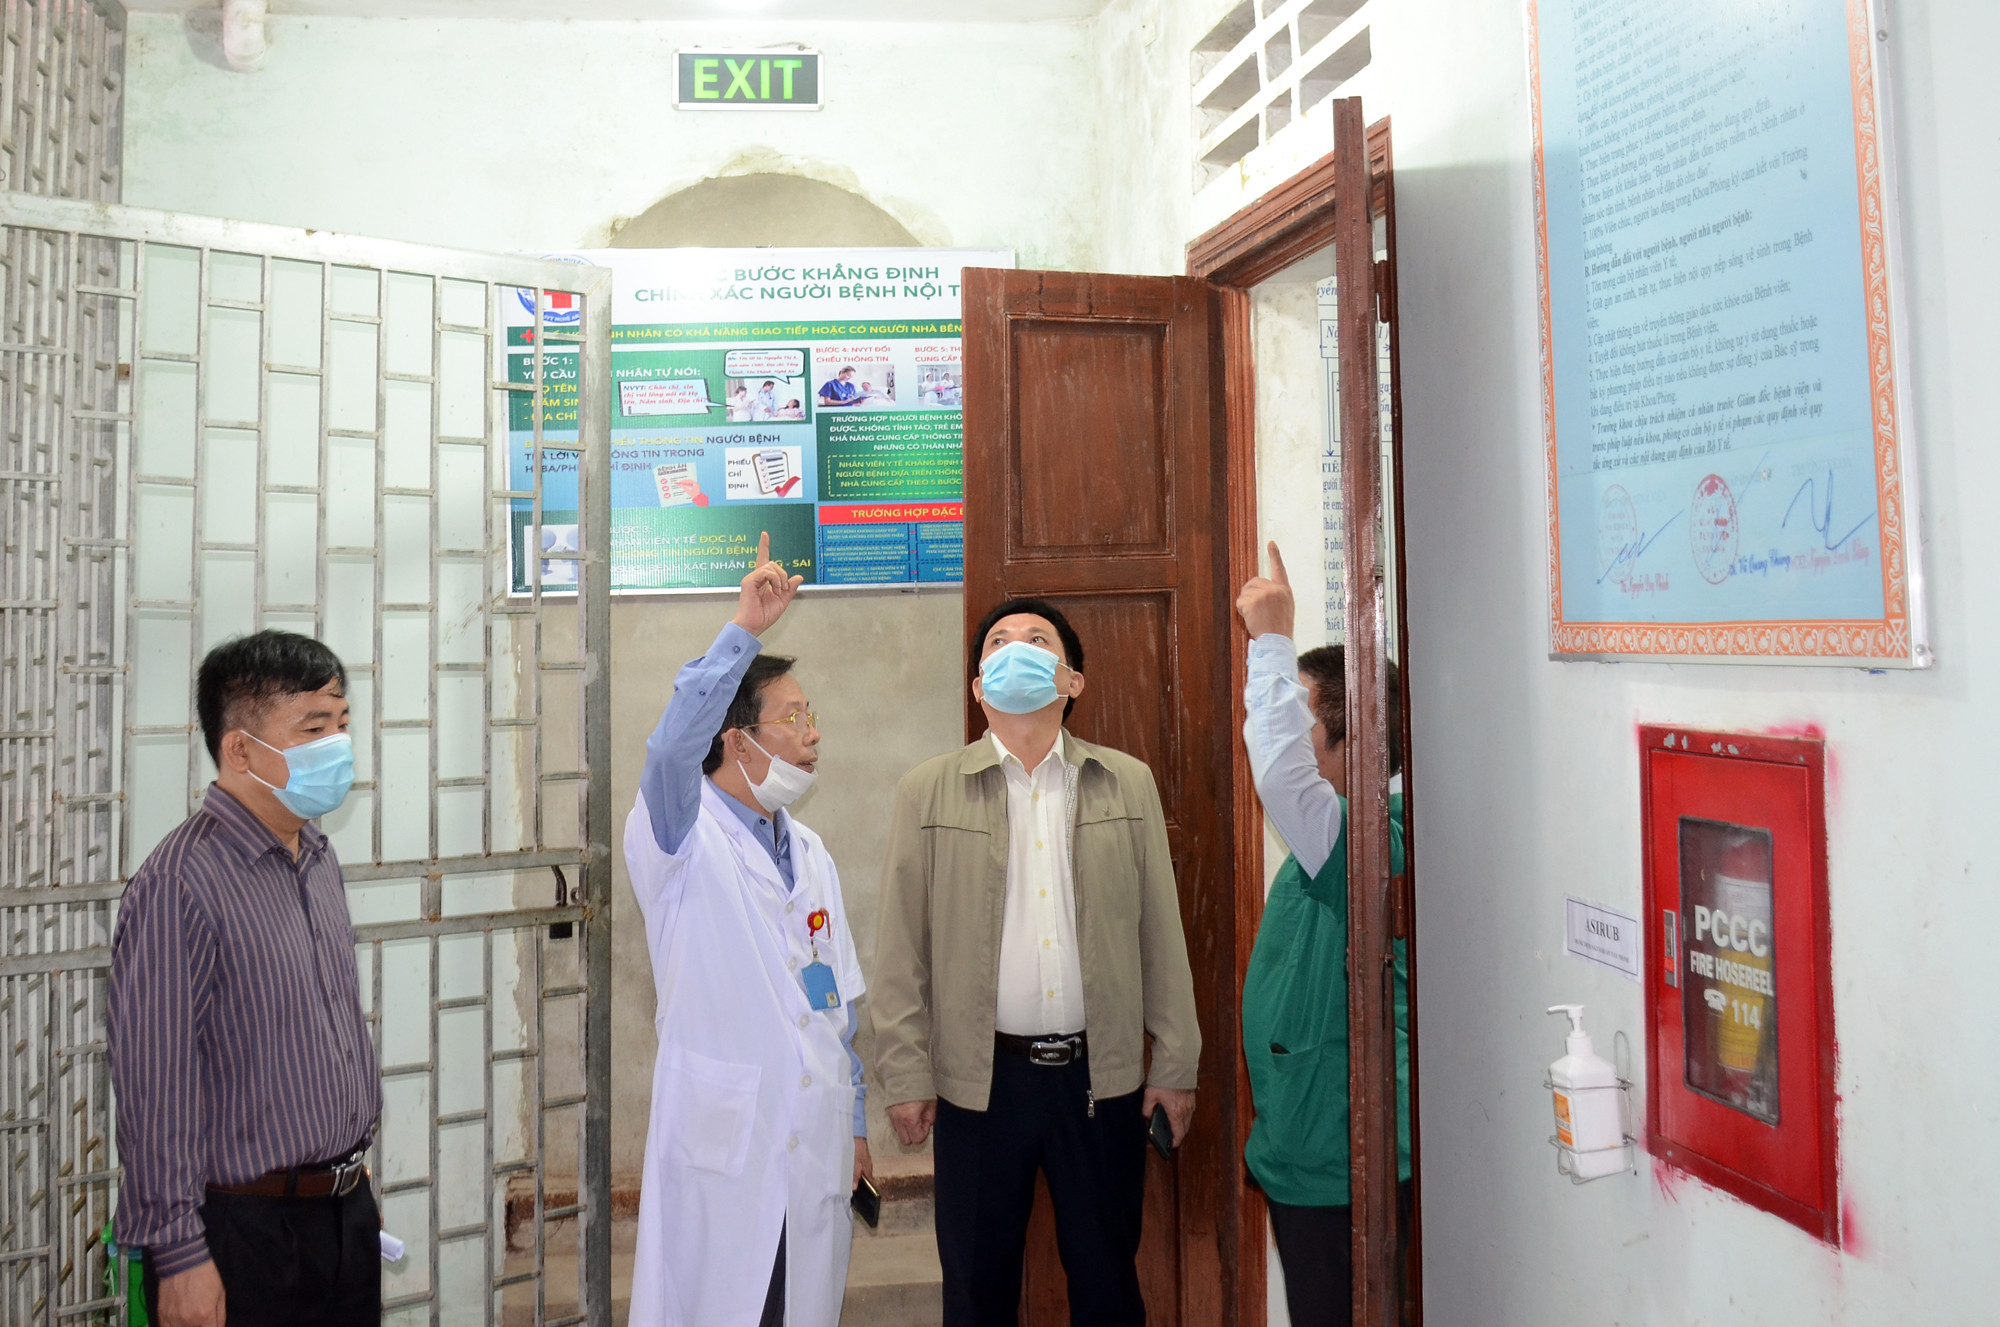 Cơ sở vật chất cũ kỹ, xuống cấp, phòng mổ của Bệnh viện Đa khoa huyện Yên Thành bị thấm dột trong đợt mưa lũ vừa qua. Ảnh: Thành Chung